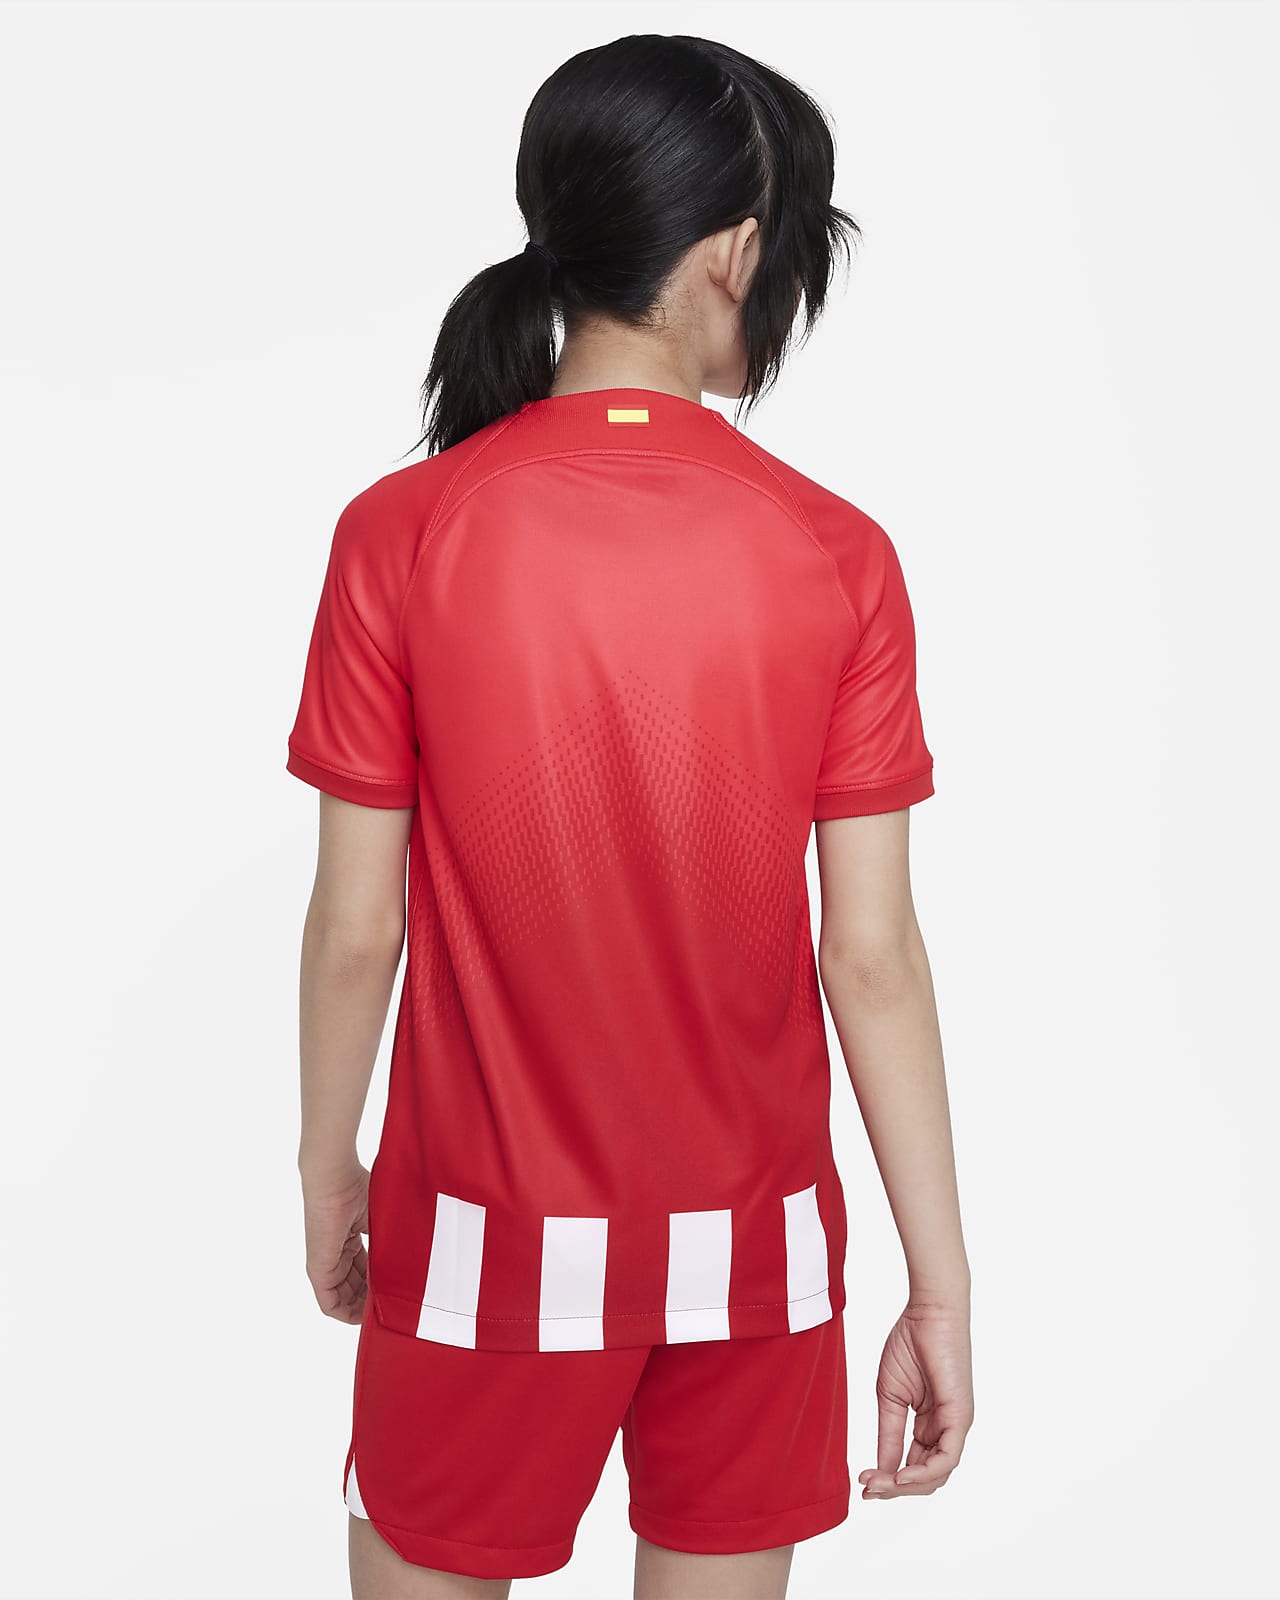 Primera equipación Stadium Atlético de Madrid 2023/24 Camiseta de fútbol  Nike Dri-FIT - Niño/a